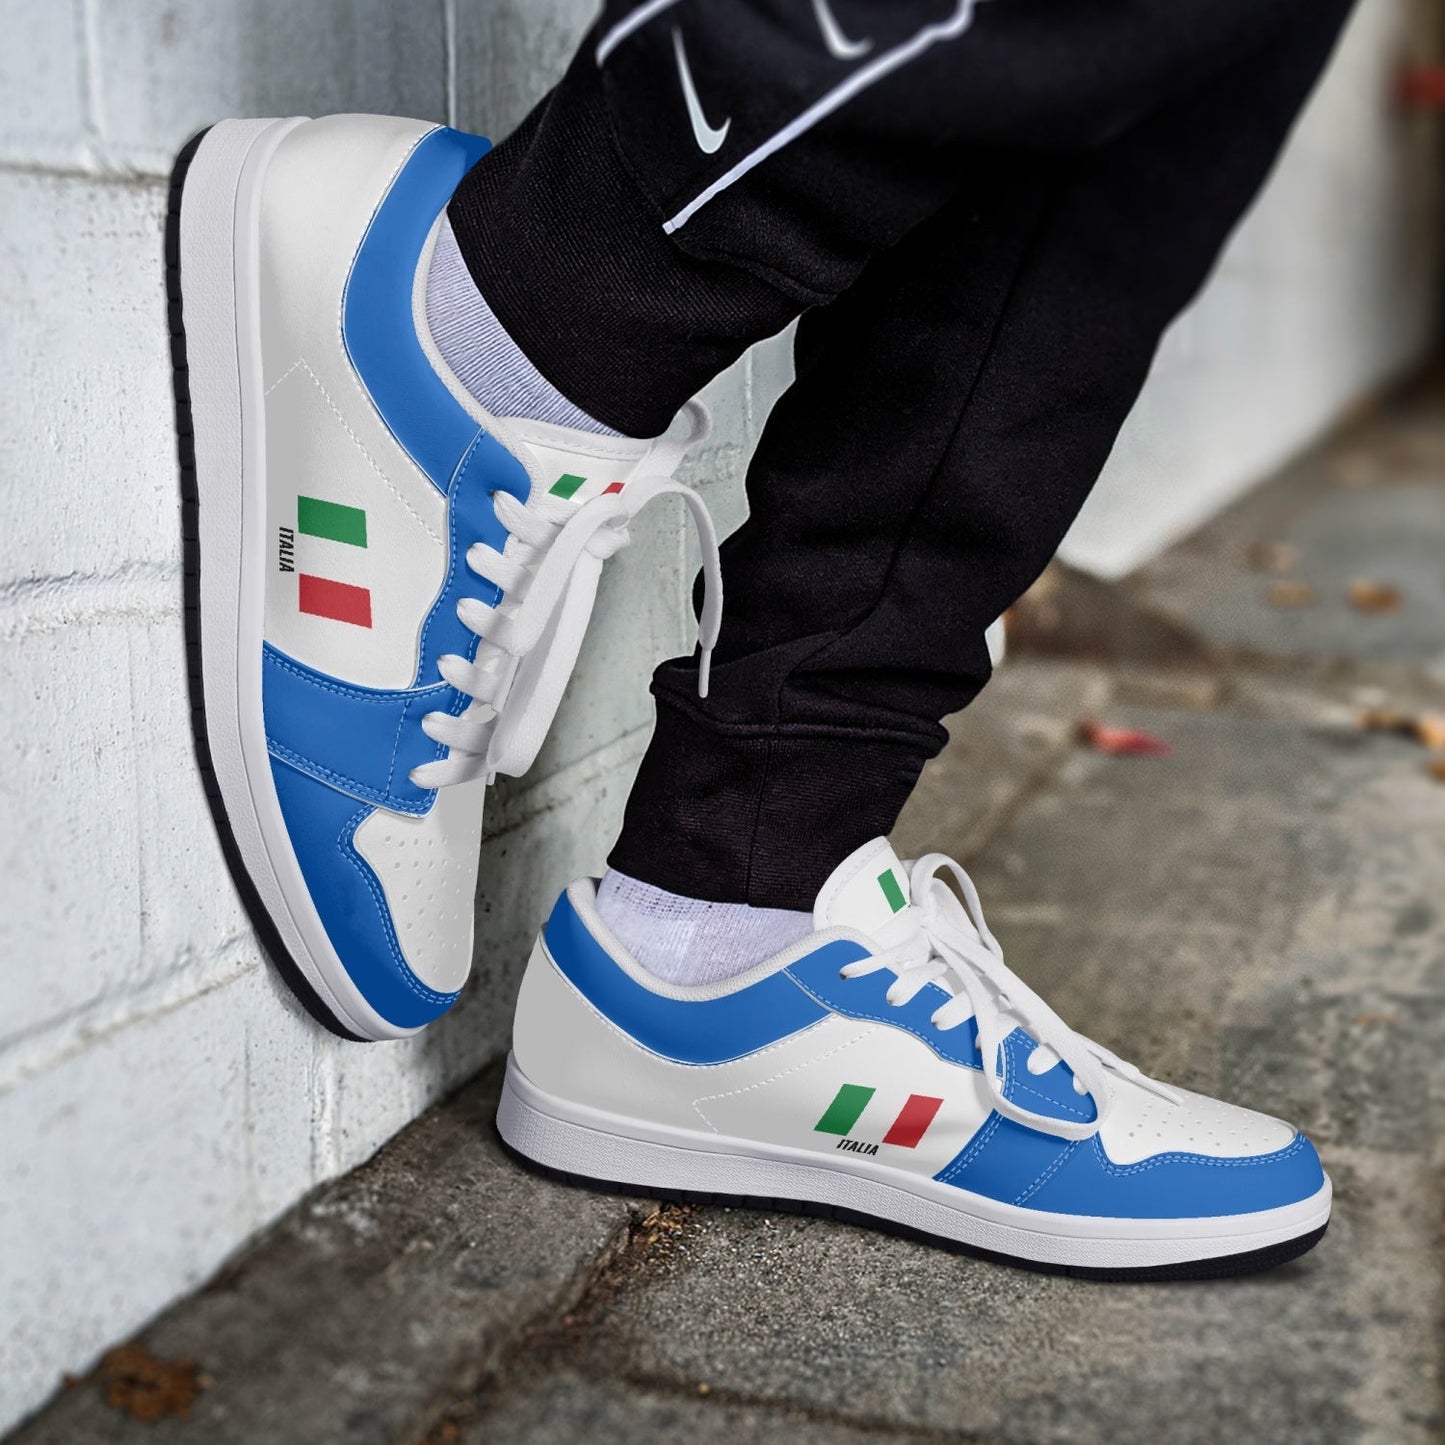 Shoes Sneakers Italia - White/Azure - Women's sizes